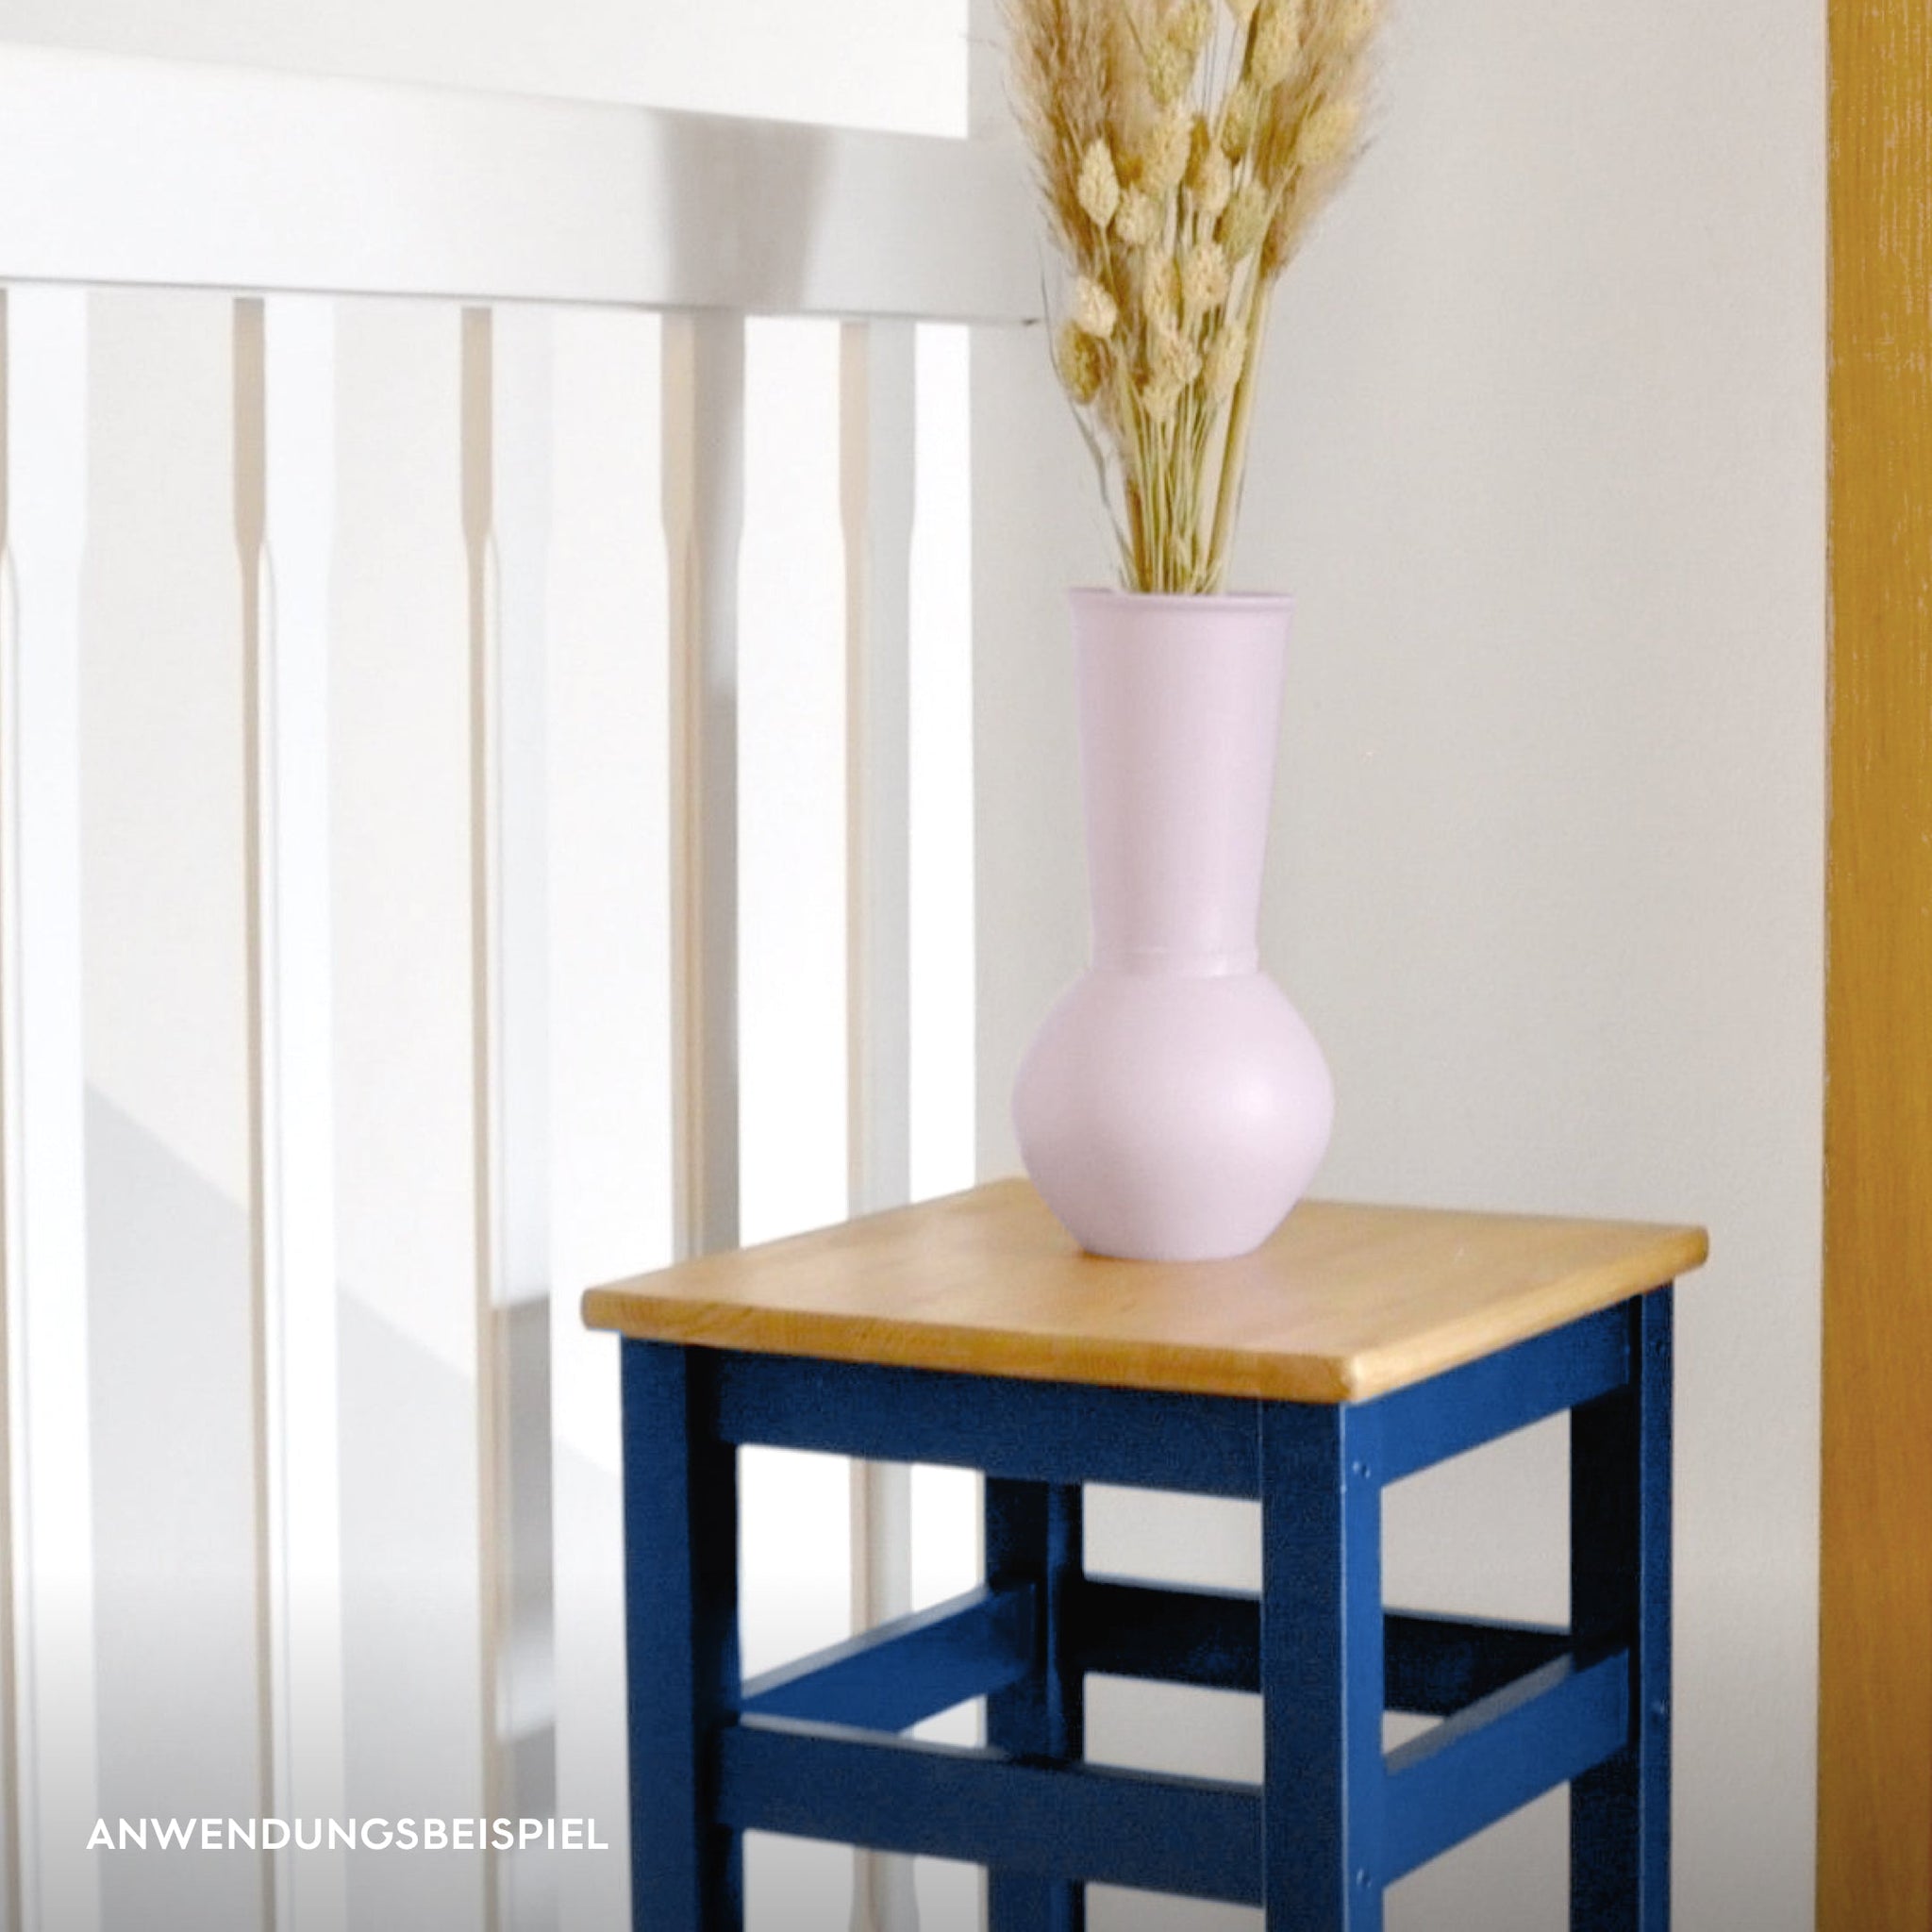 Vase in rosa, Möbelfarbe „Heideblüte“, angemalt, auf dunkelblauem Hocker und dekoriert mit Trockenblumen oder Pampasgras für Boho-Stil oder moderne Einrichtung